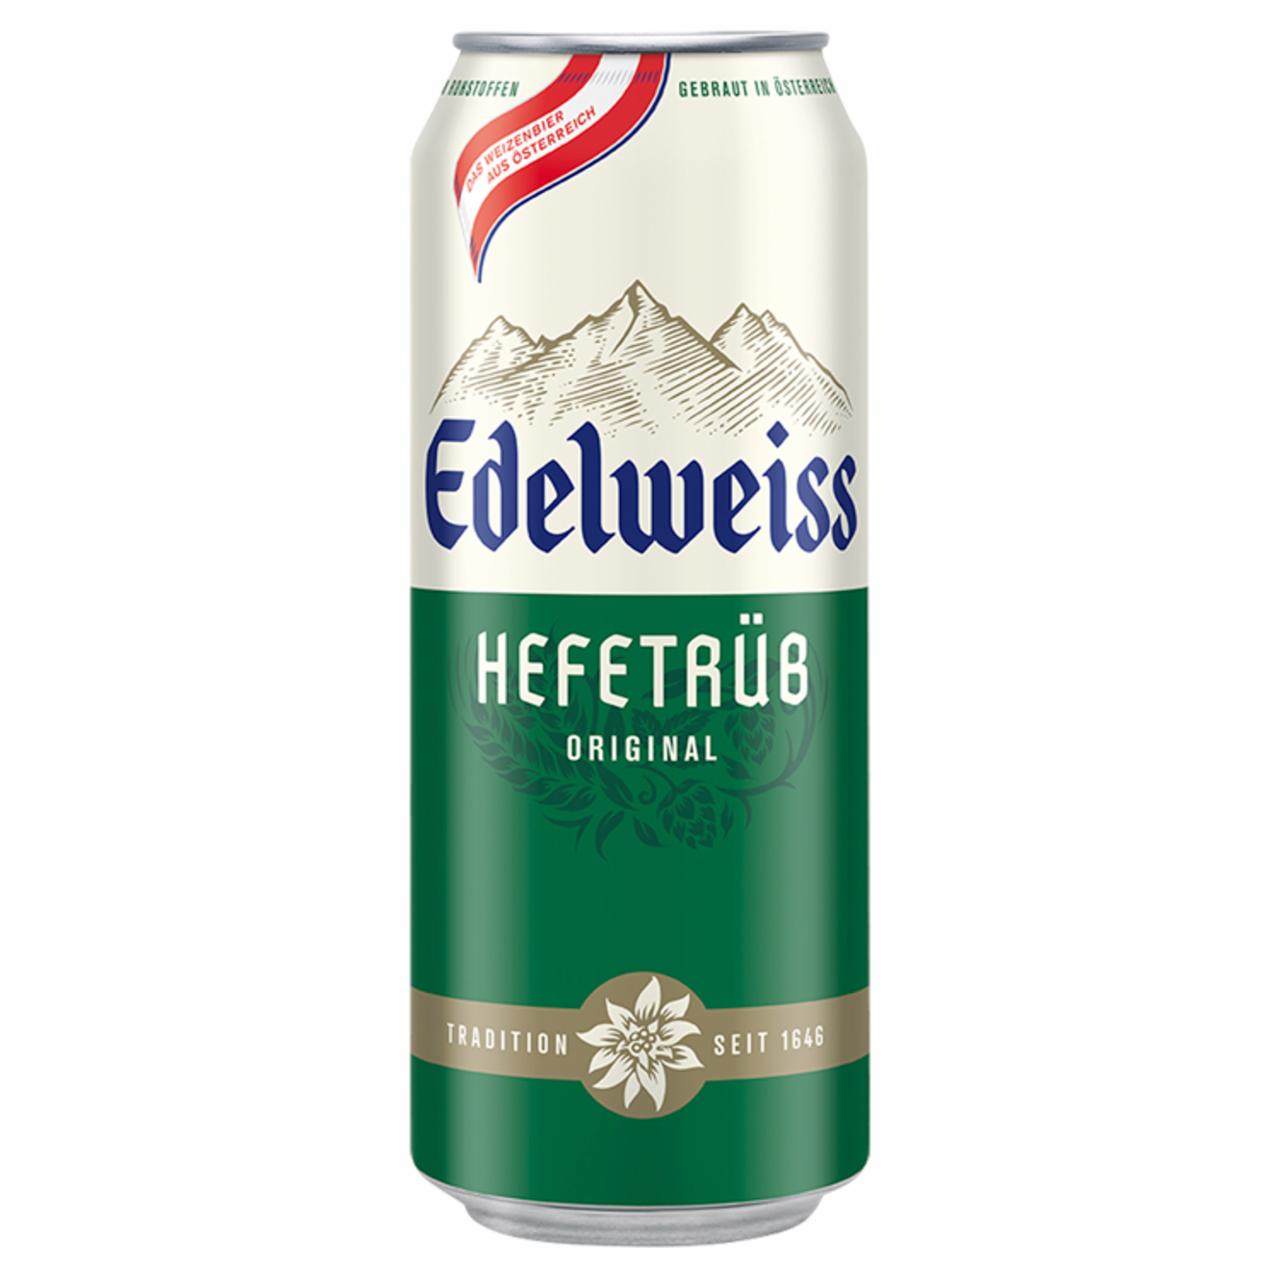 Képek - Edelweiss Hefetrüb szűretlen világos búzasör 5,3% 0,5 l doboz